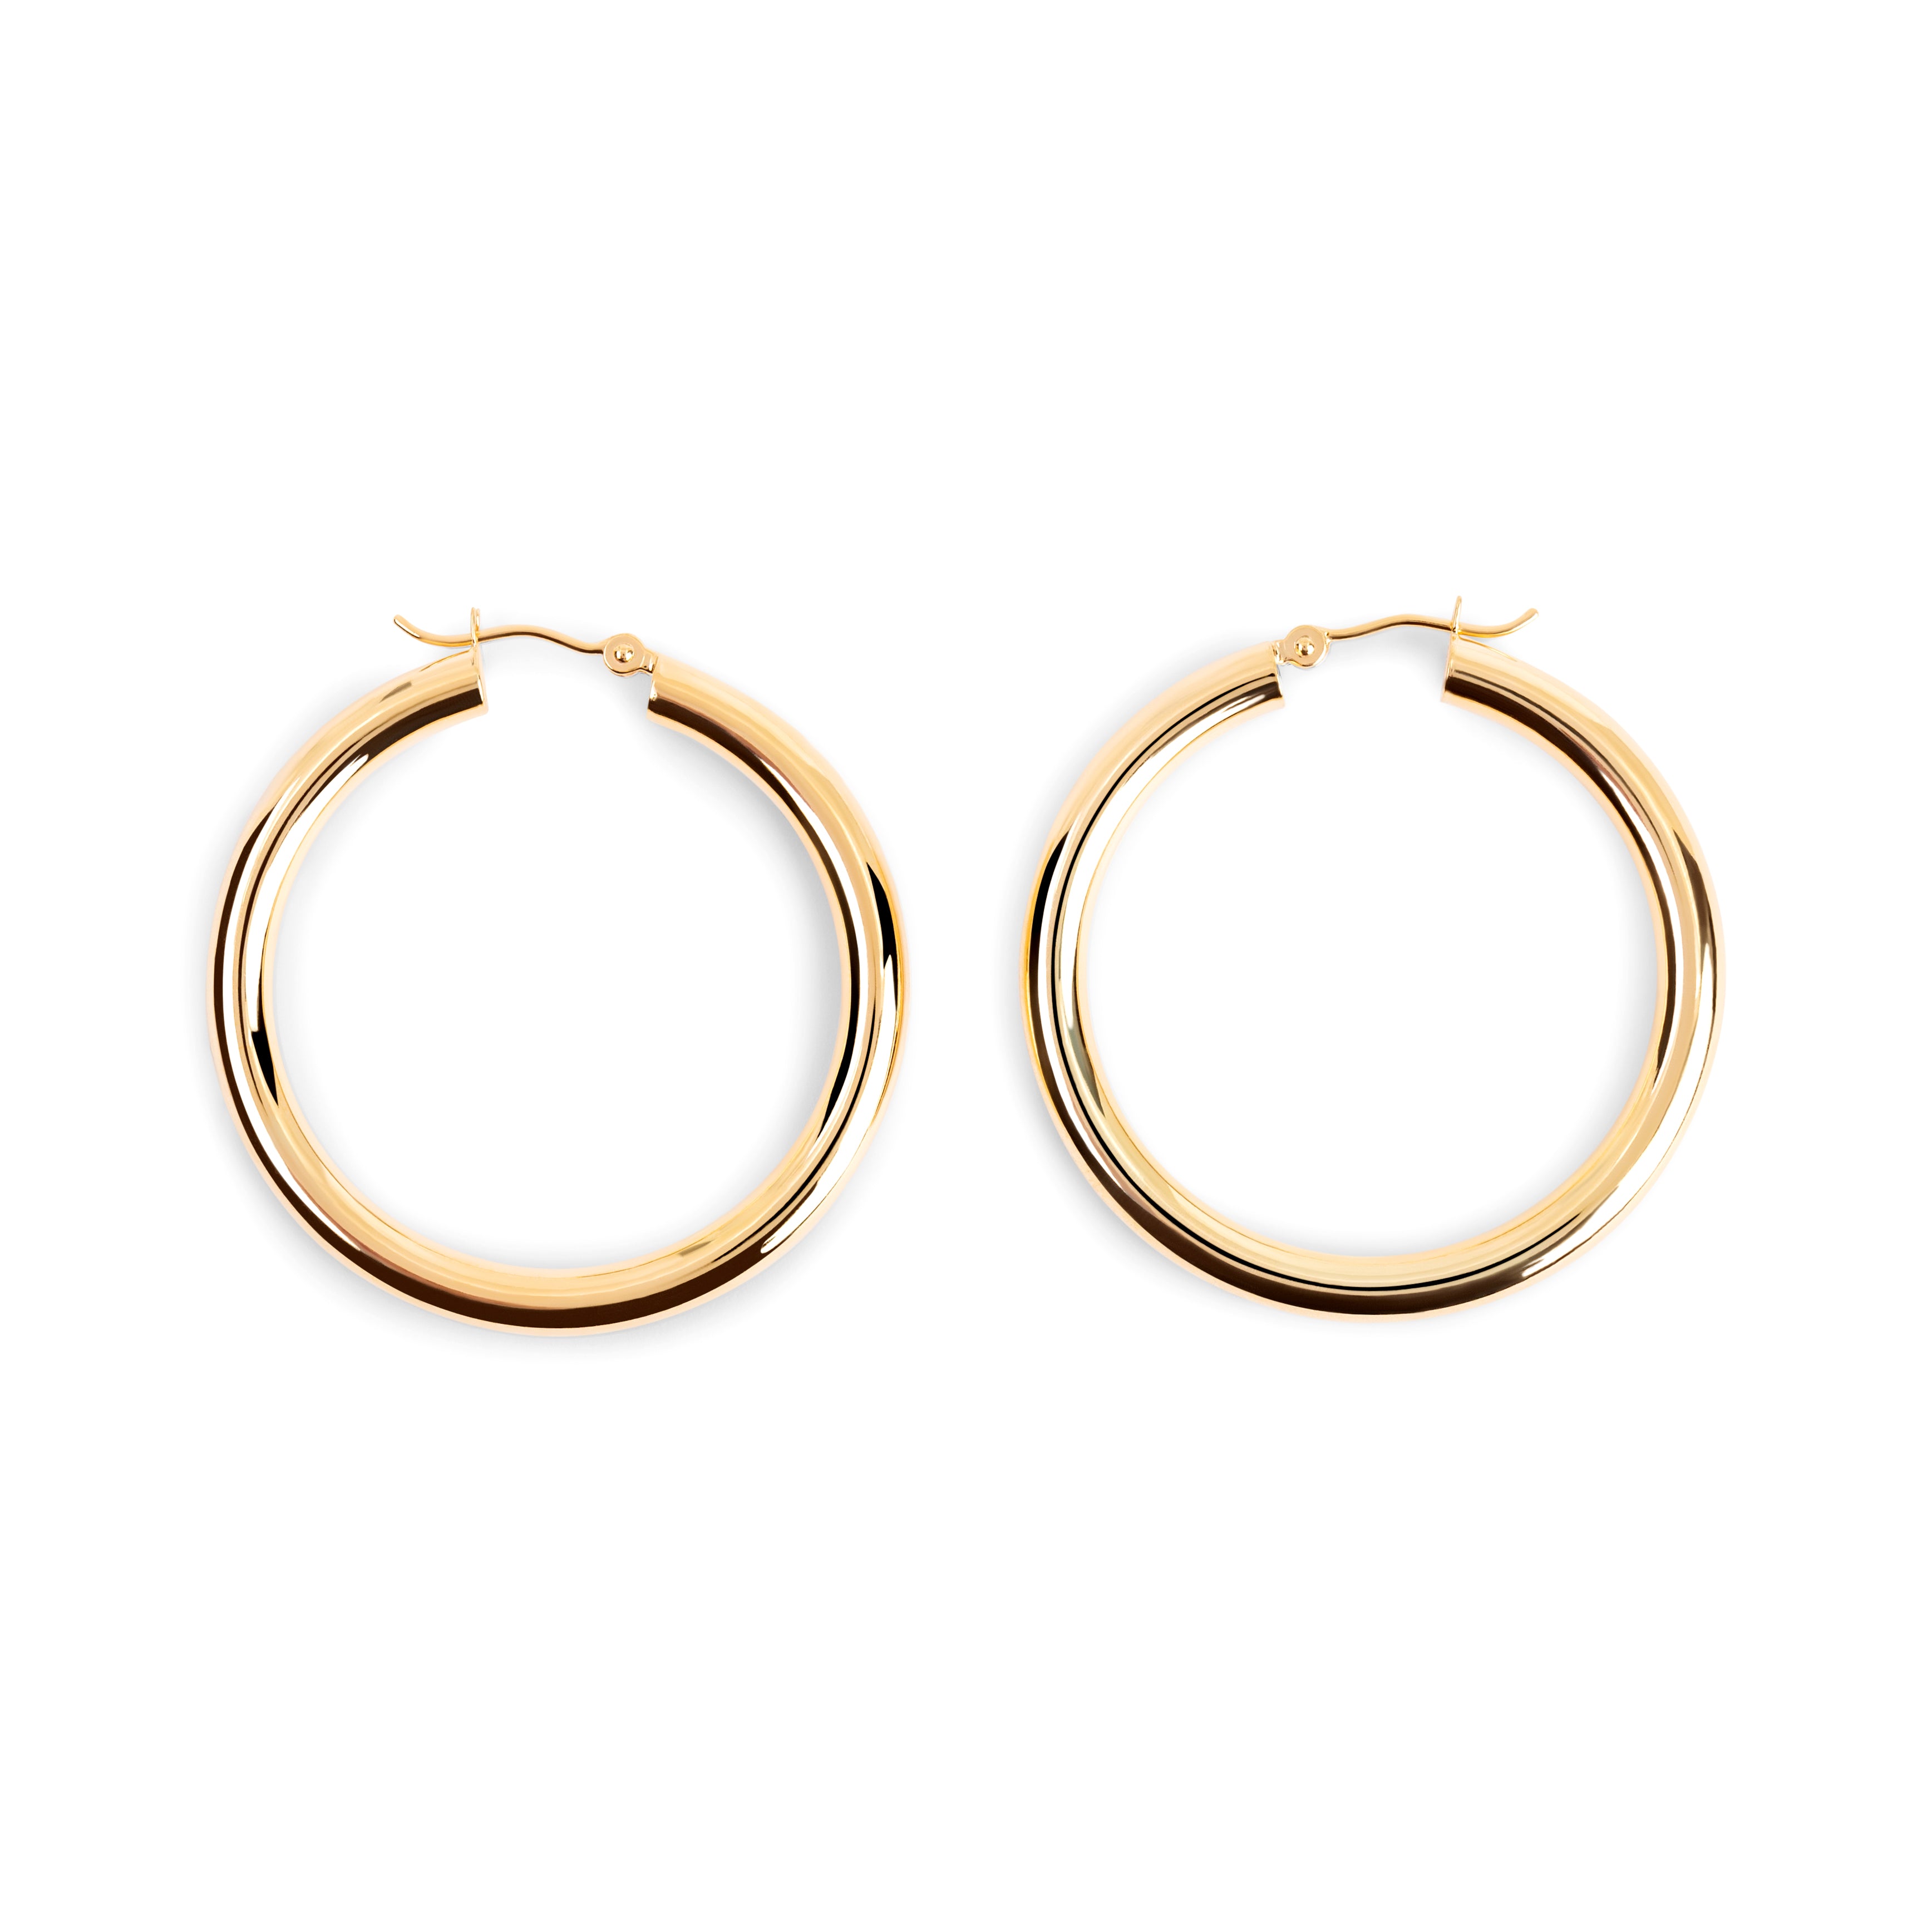 1.5 Inch Gold Hoop Earrings